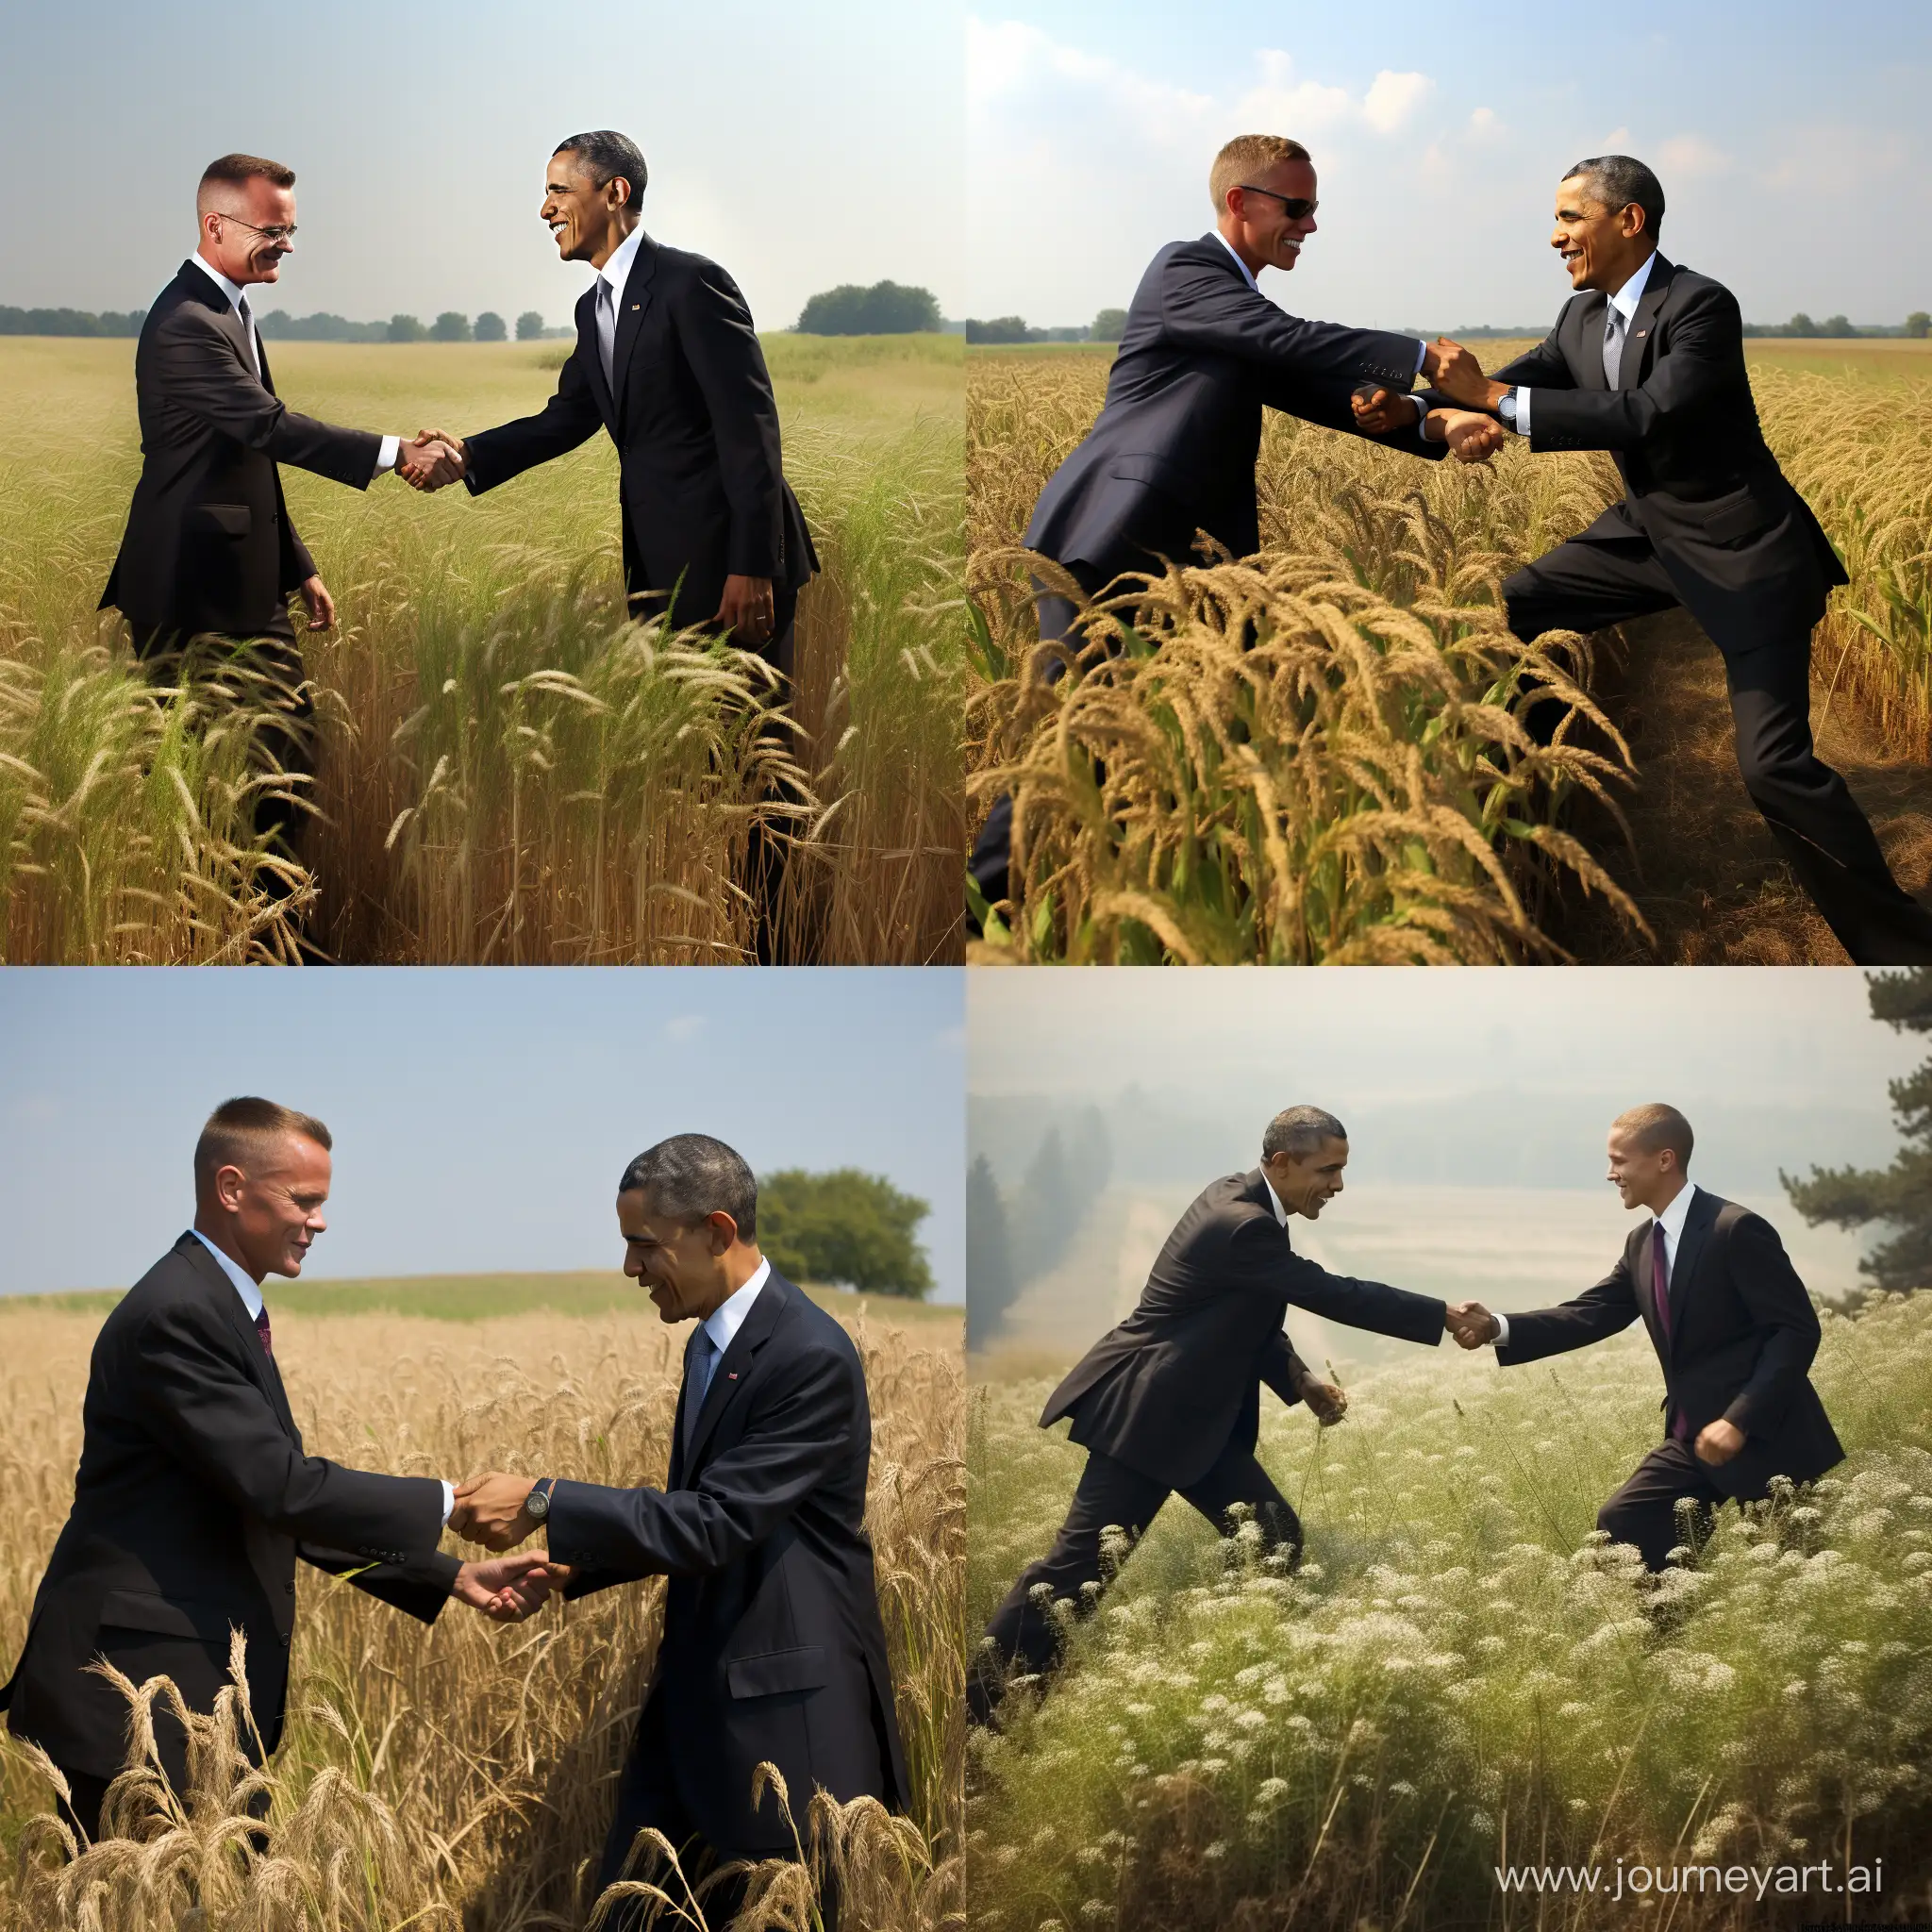 Obama fistbumping Andrej Duda in a field